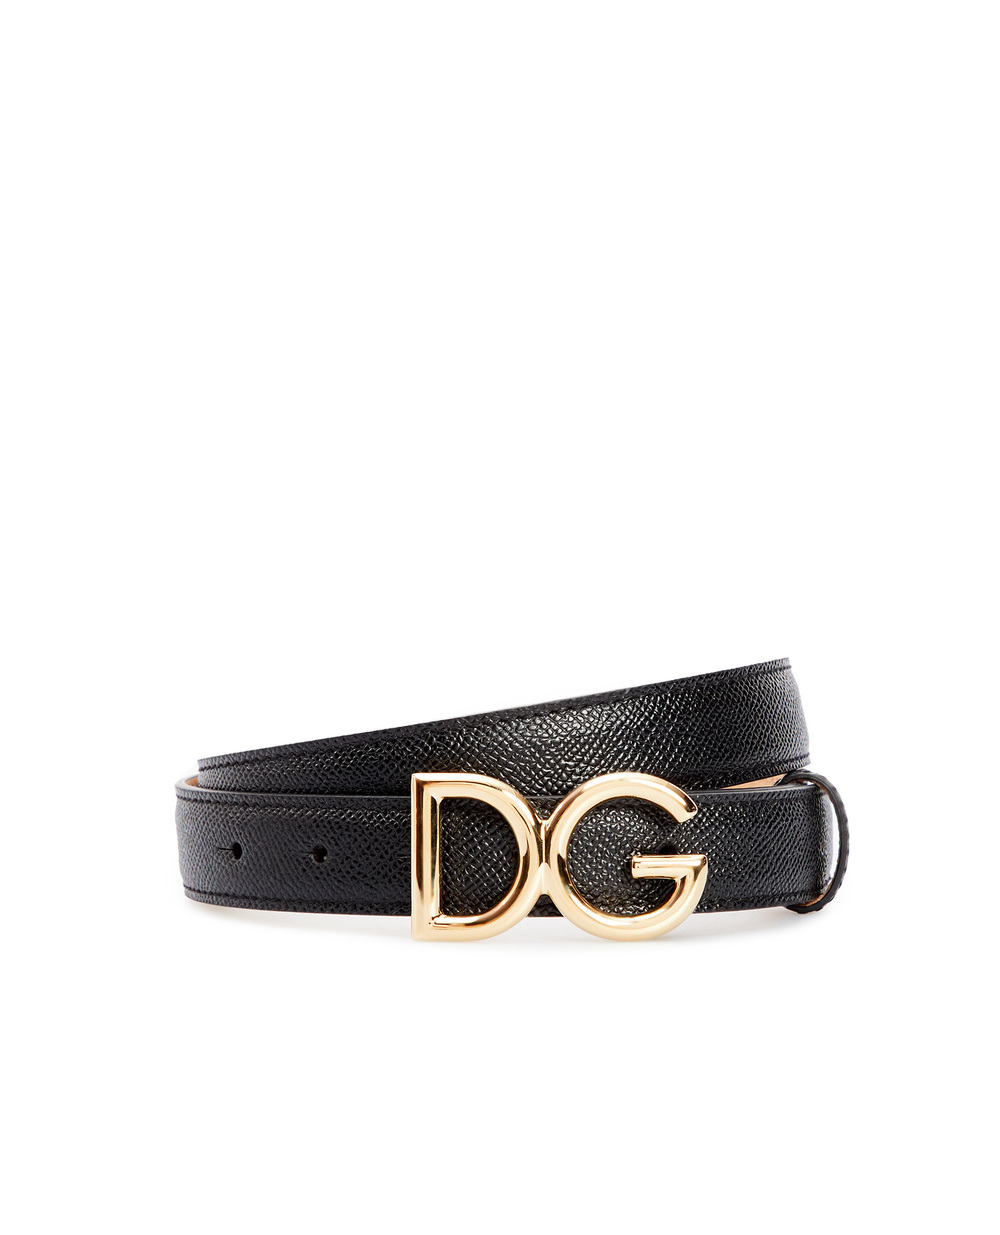 Кожаный ремень Dolce&Gabbana BE1325-A1001, черный цвет • Купить в интернет-магазине Kameron